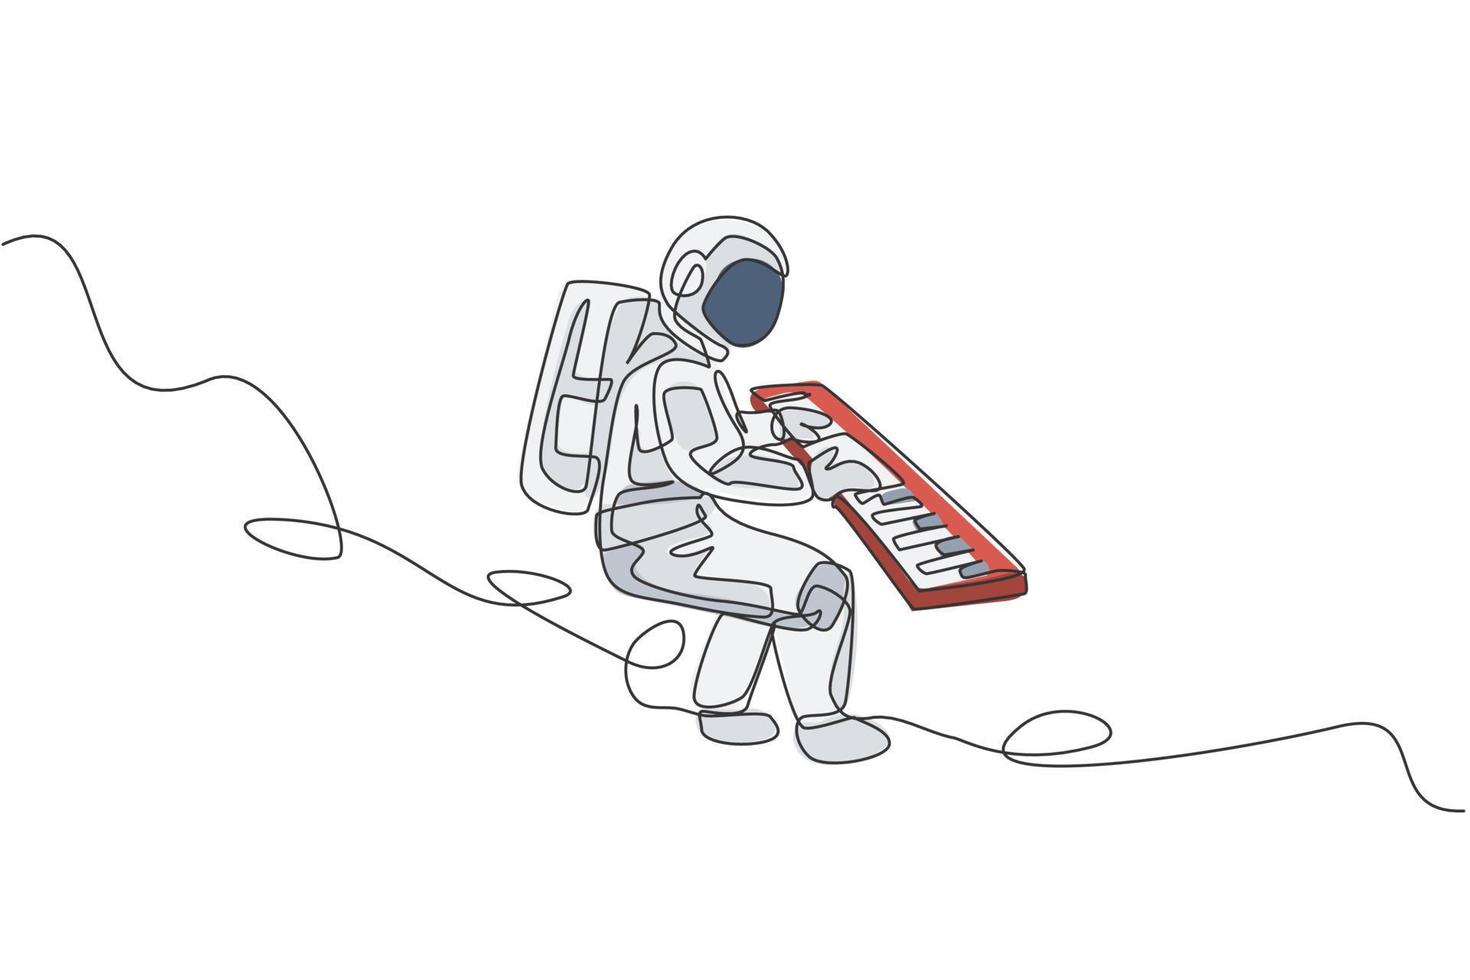 één enkele lijntekening van ruimtevaarder die toetsenbordmuziekinstrument in diepe ruimte grafische vectorillustratie speelt. muziek concert poster met ruimte astronaut concept. modern ononderbroken lijntekeningontwerp vector